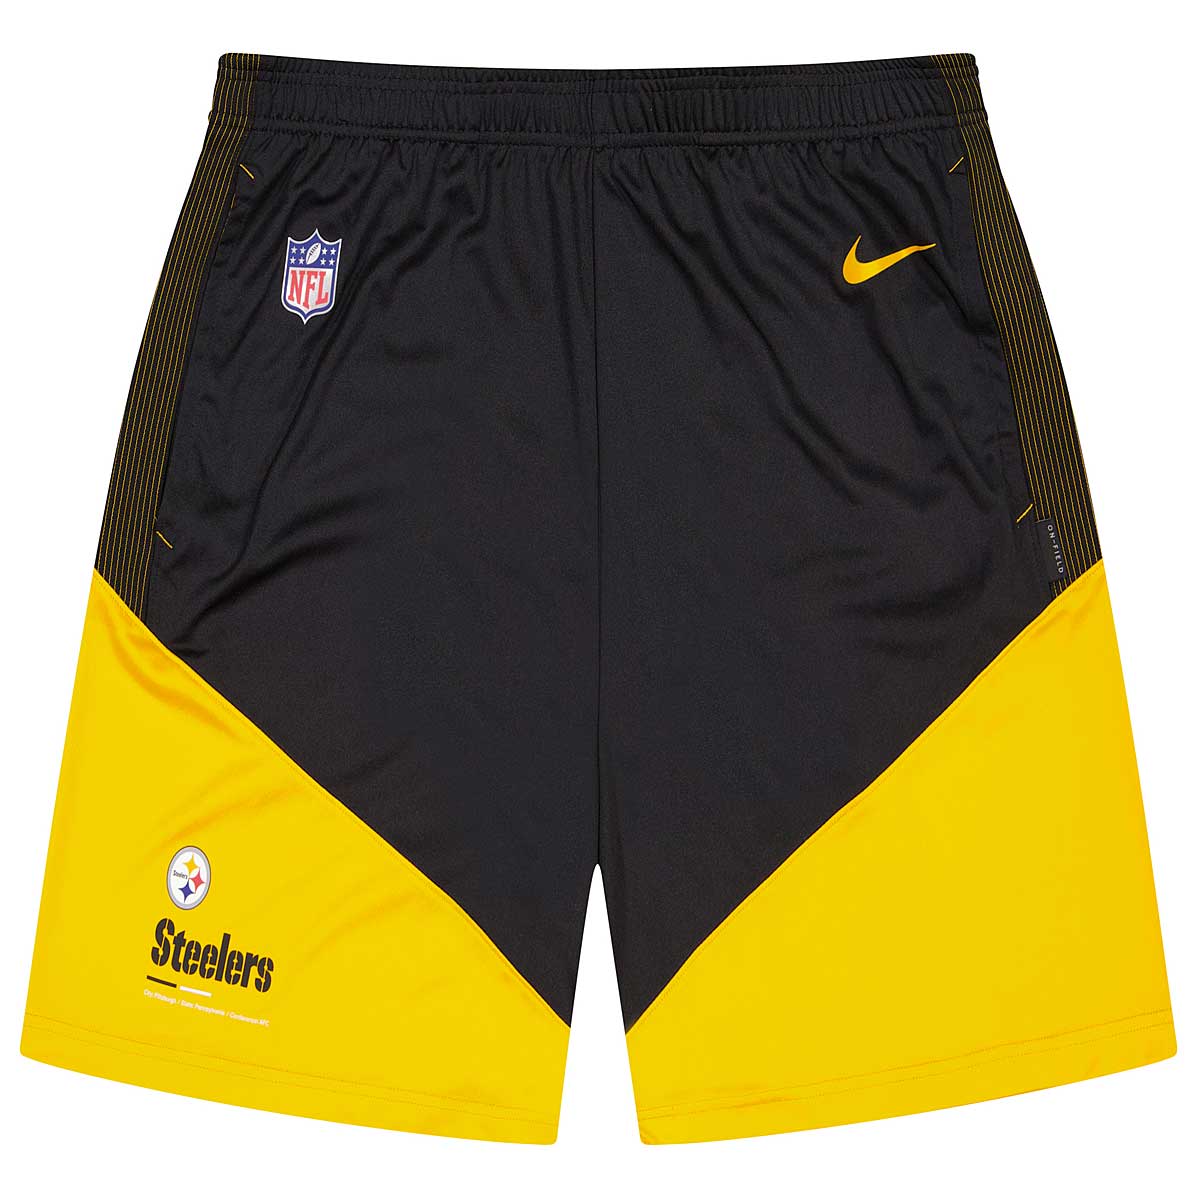 Nike Nfl Pittsburgh Steelers Dri-Fit Knit Shorts, Black -University Gold-Black Pittsburgh Steelers